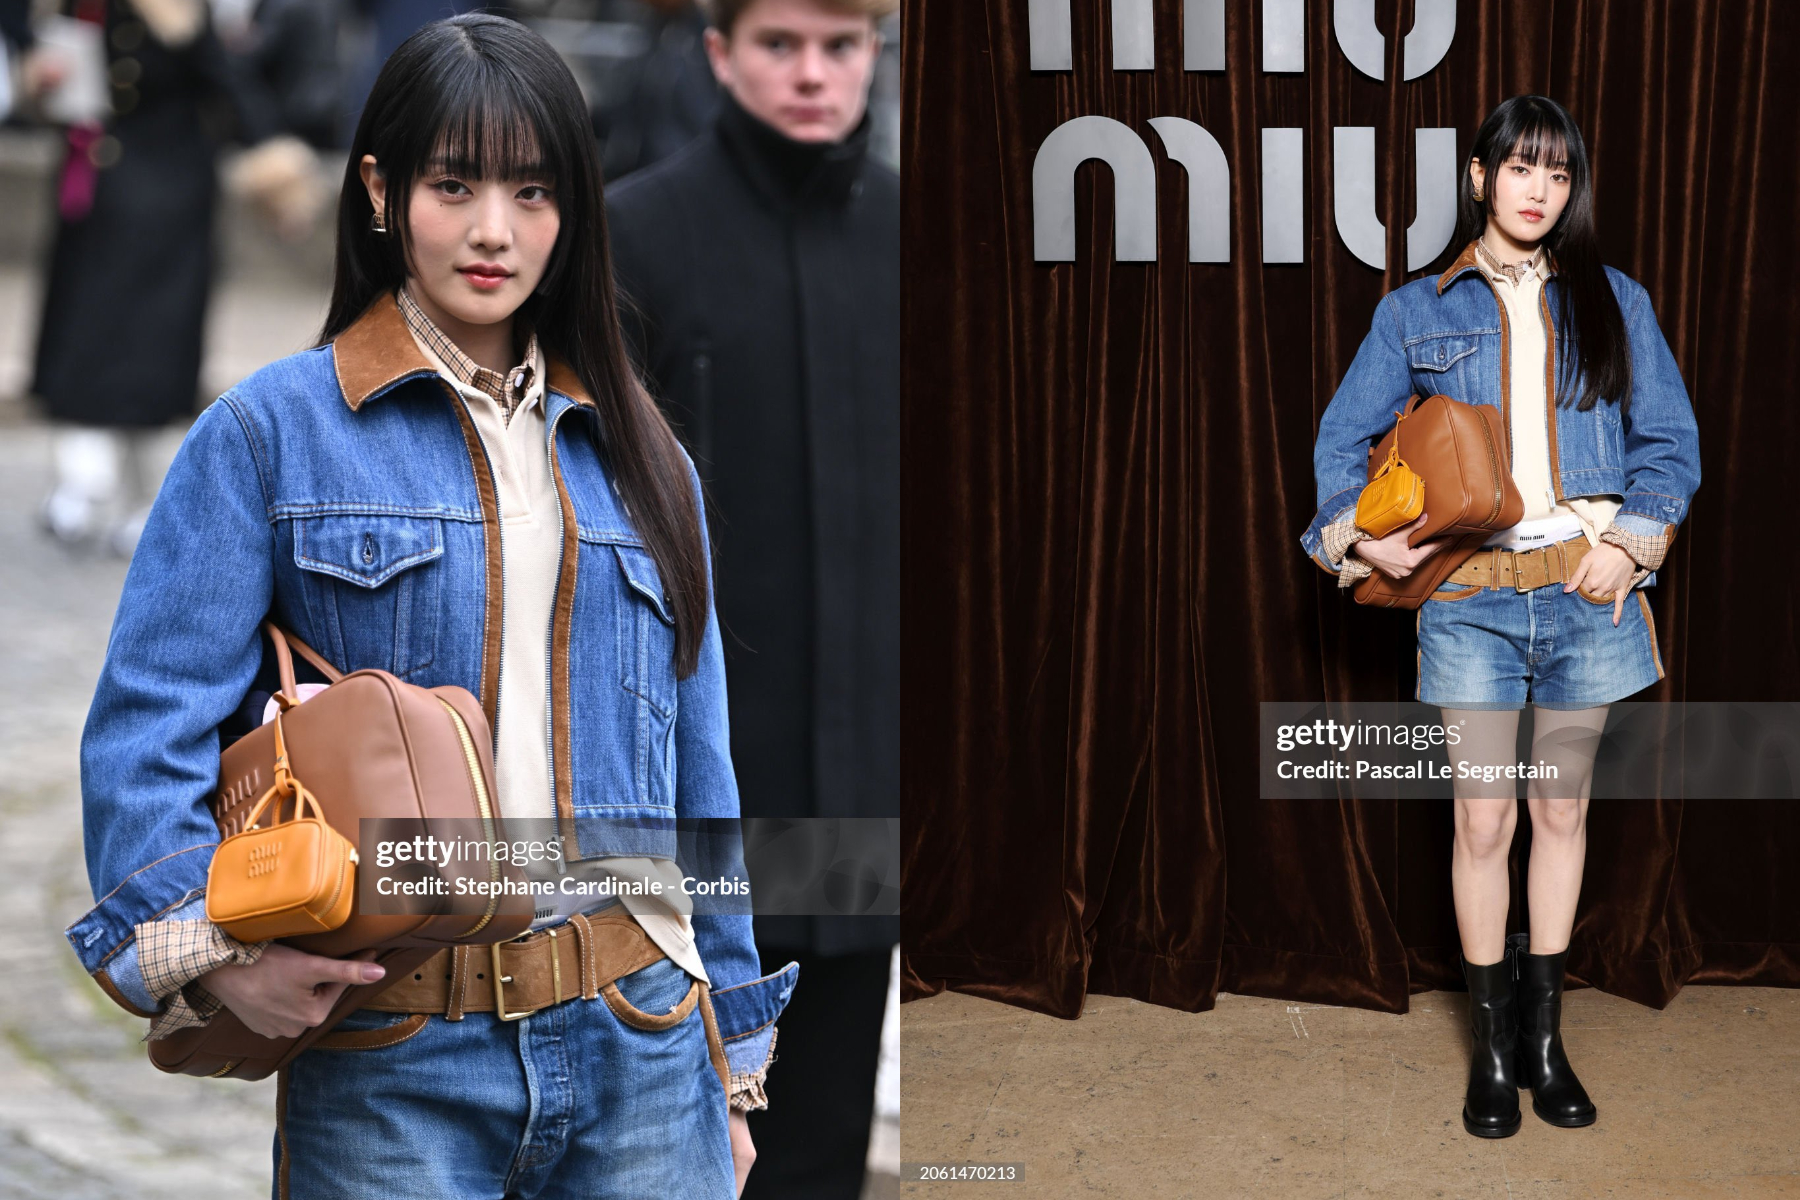 Dàn sao Thái qua “ống kính hung thần” Getty Images ở Paris Fashion Week: Lisa thần thái ngút ngàn, Baifern - Mai Davika và các mỹ nhân khác thì sao? - Ảnh 24.